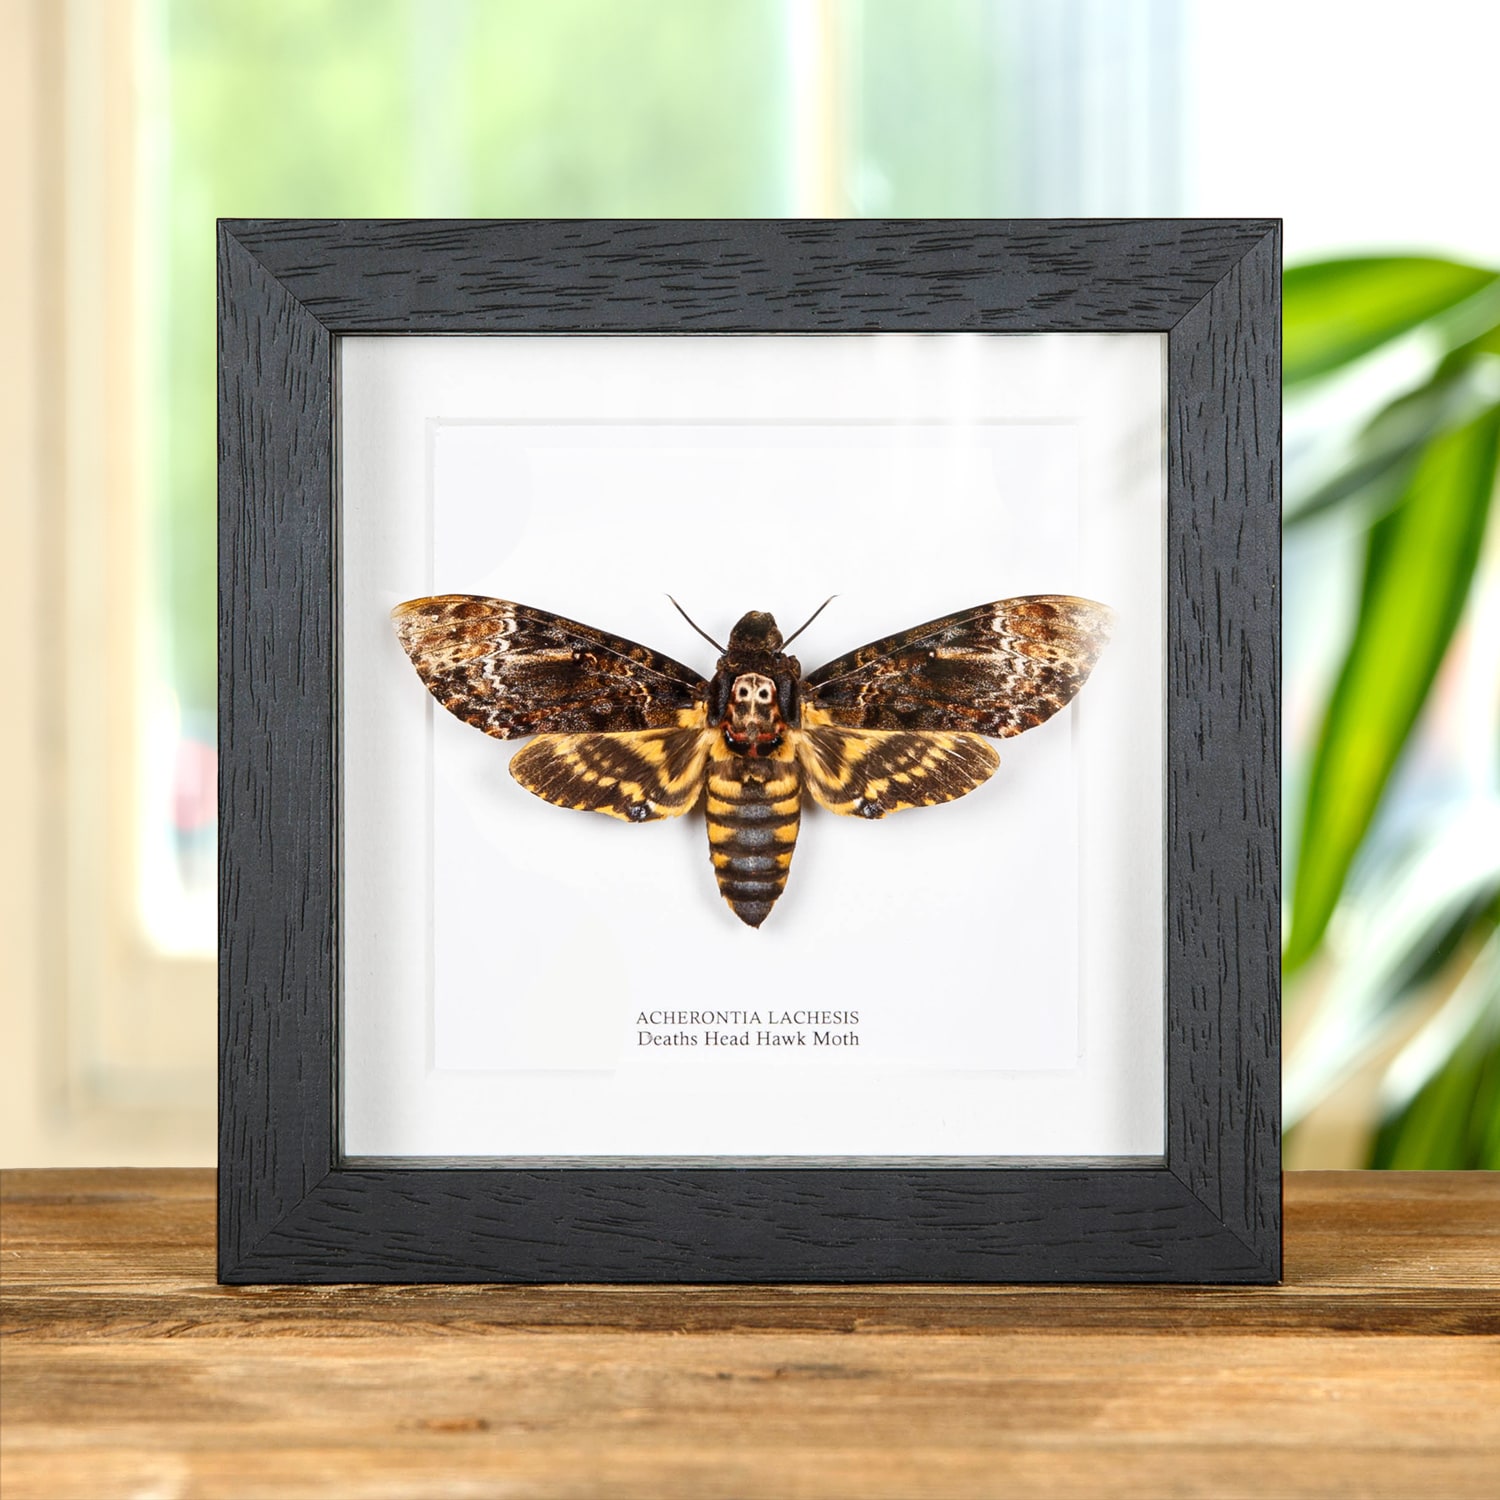 Deaths Head Hawk Moth in Box Frame (Acherontia lachesis)